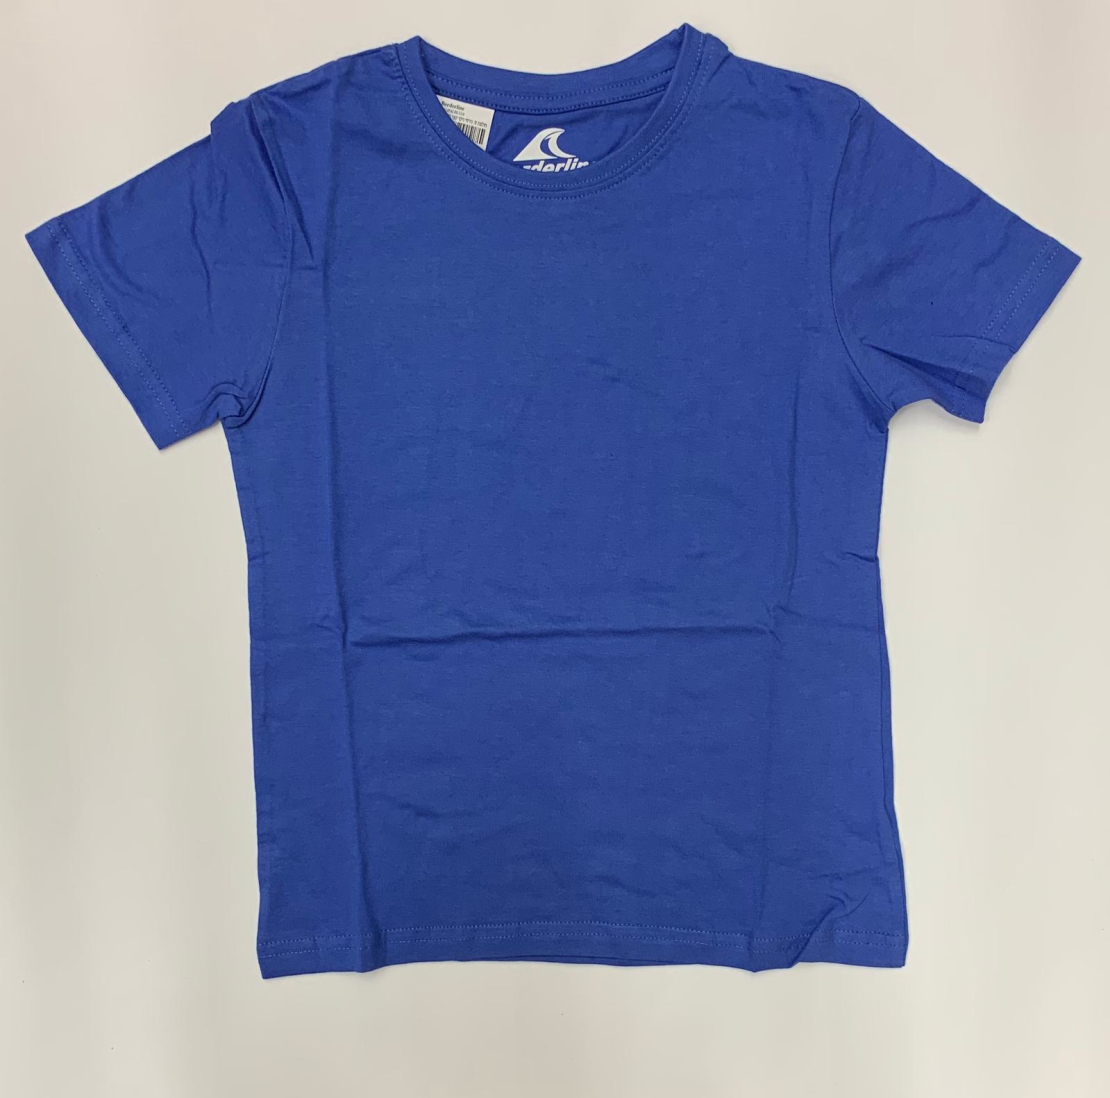 חולצת בית בנים ס.ג'רסי כחול 